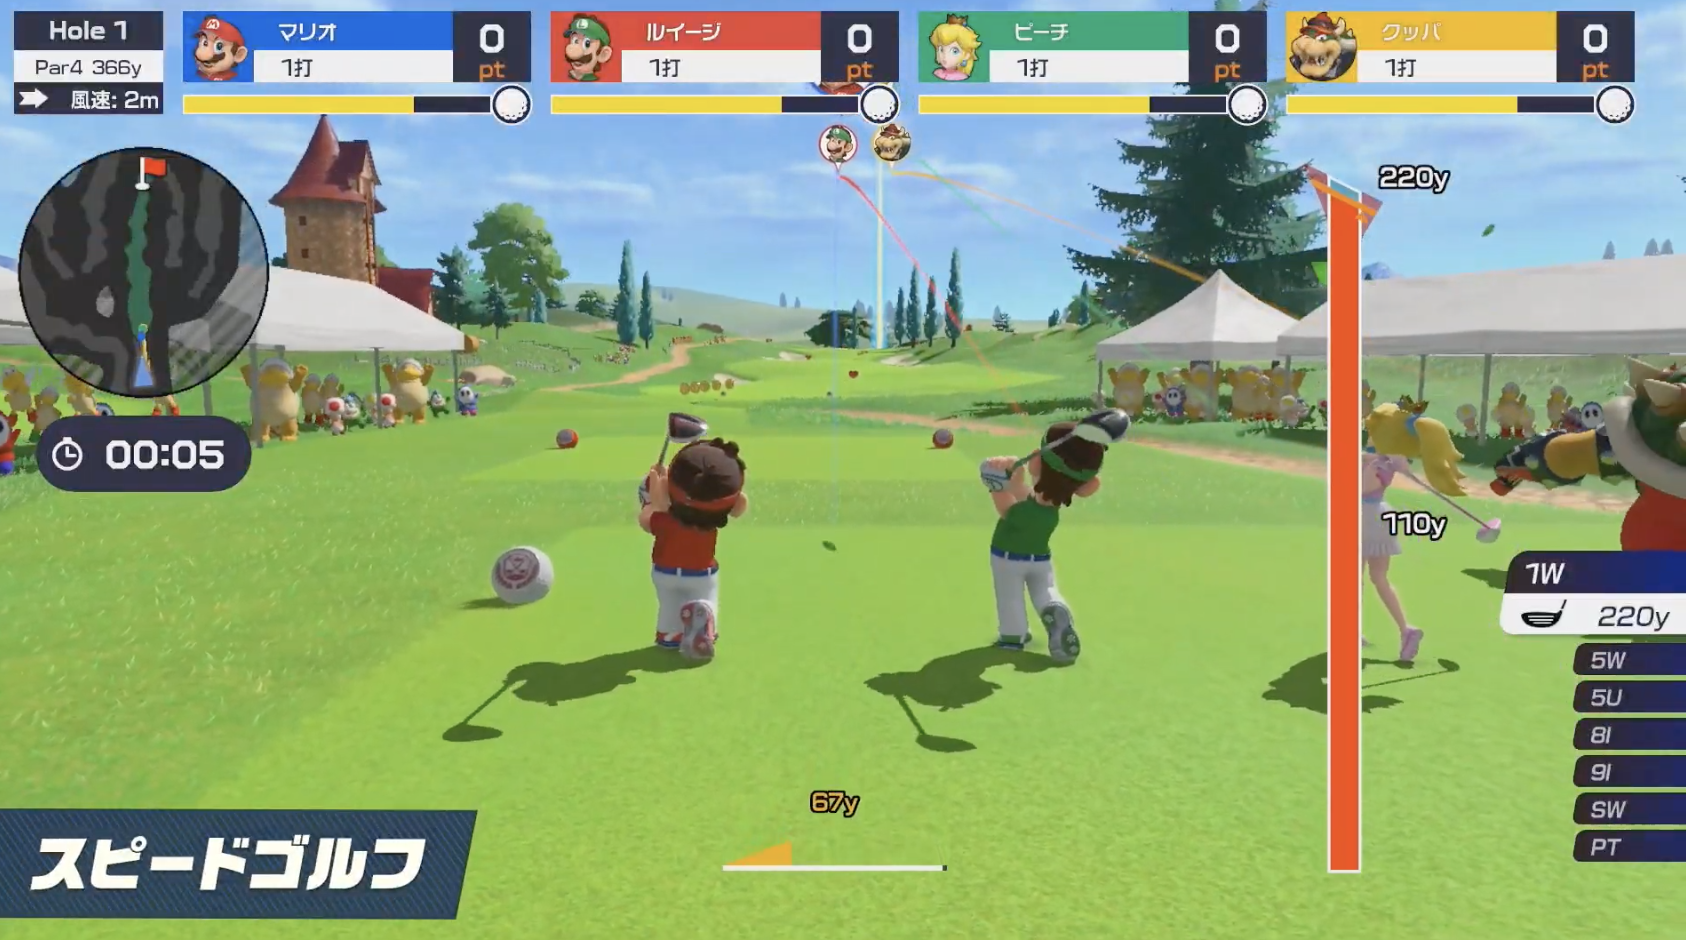 「マリオゴルフ スーパーラッシュ」6月25日発売、同時プレイで早さを競う「スピードゴルフ」を収録